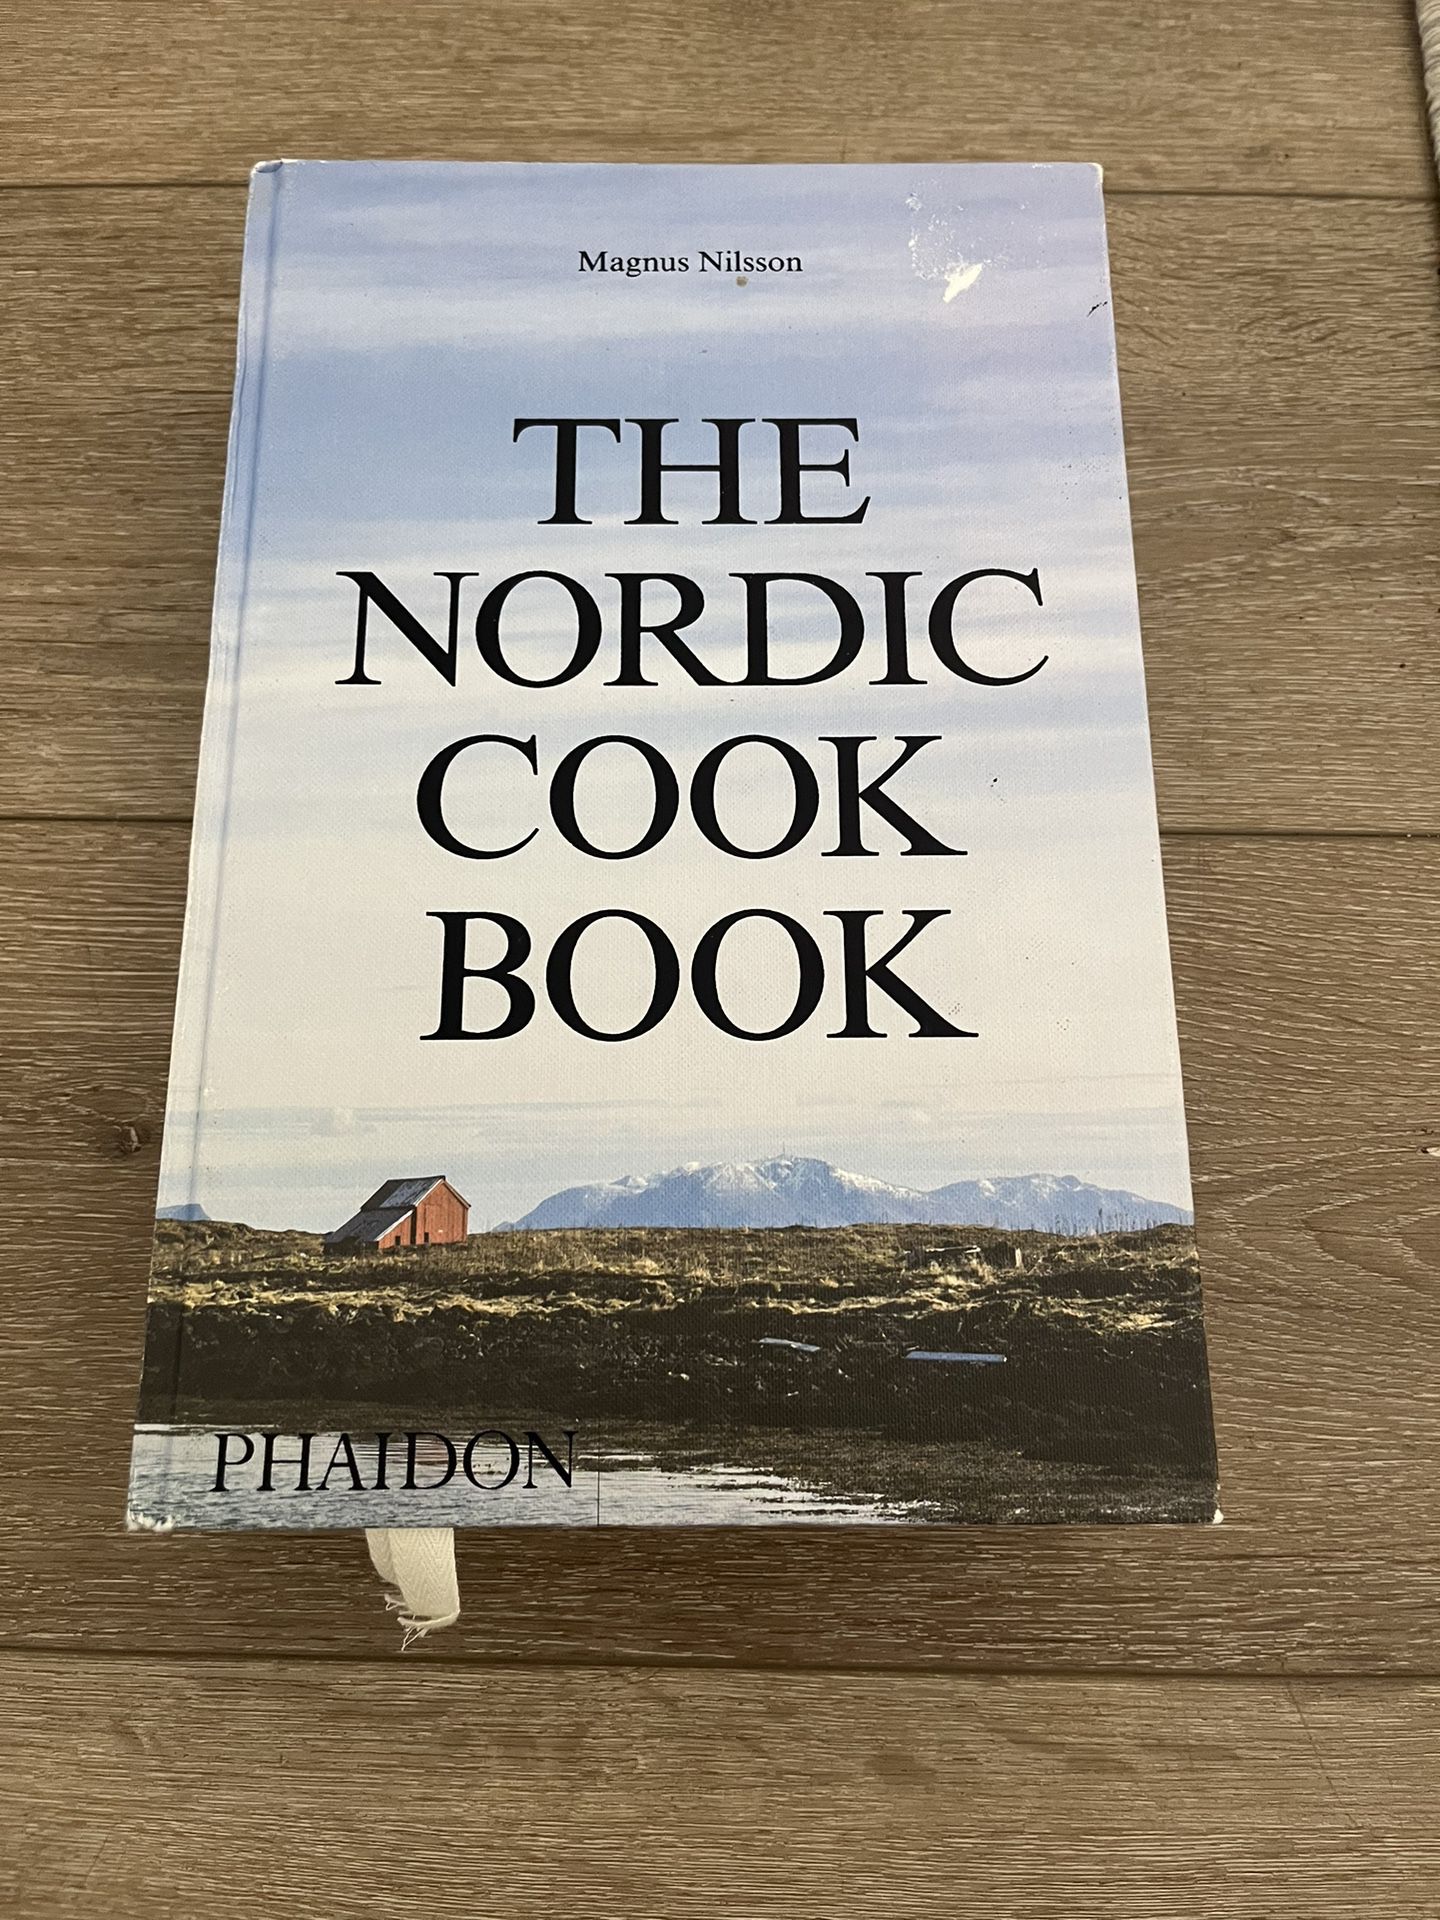 The Nordic Cookbook, Cookbook, Books, Book, Recipes Book, 